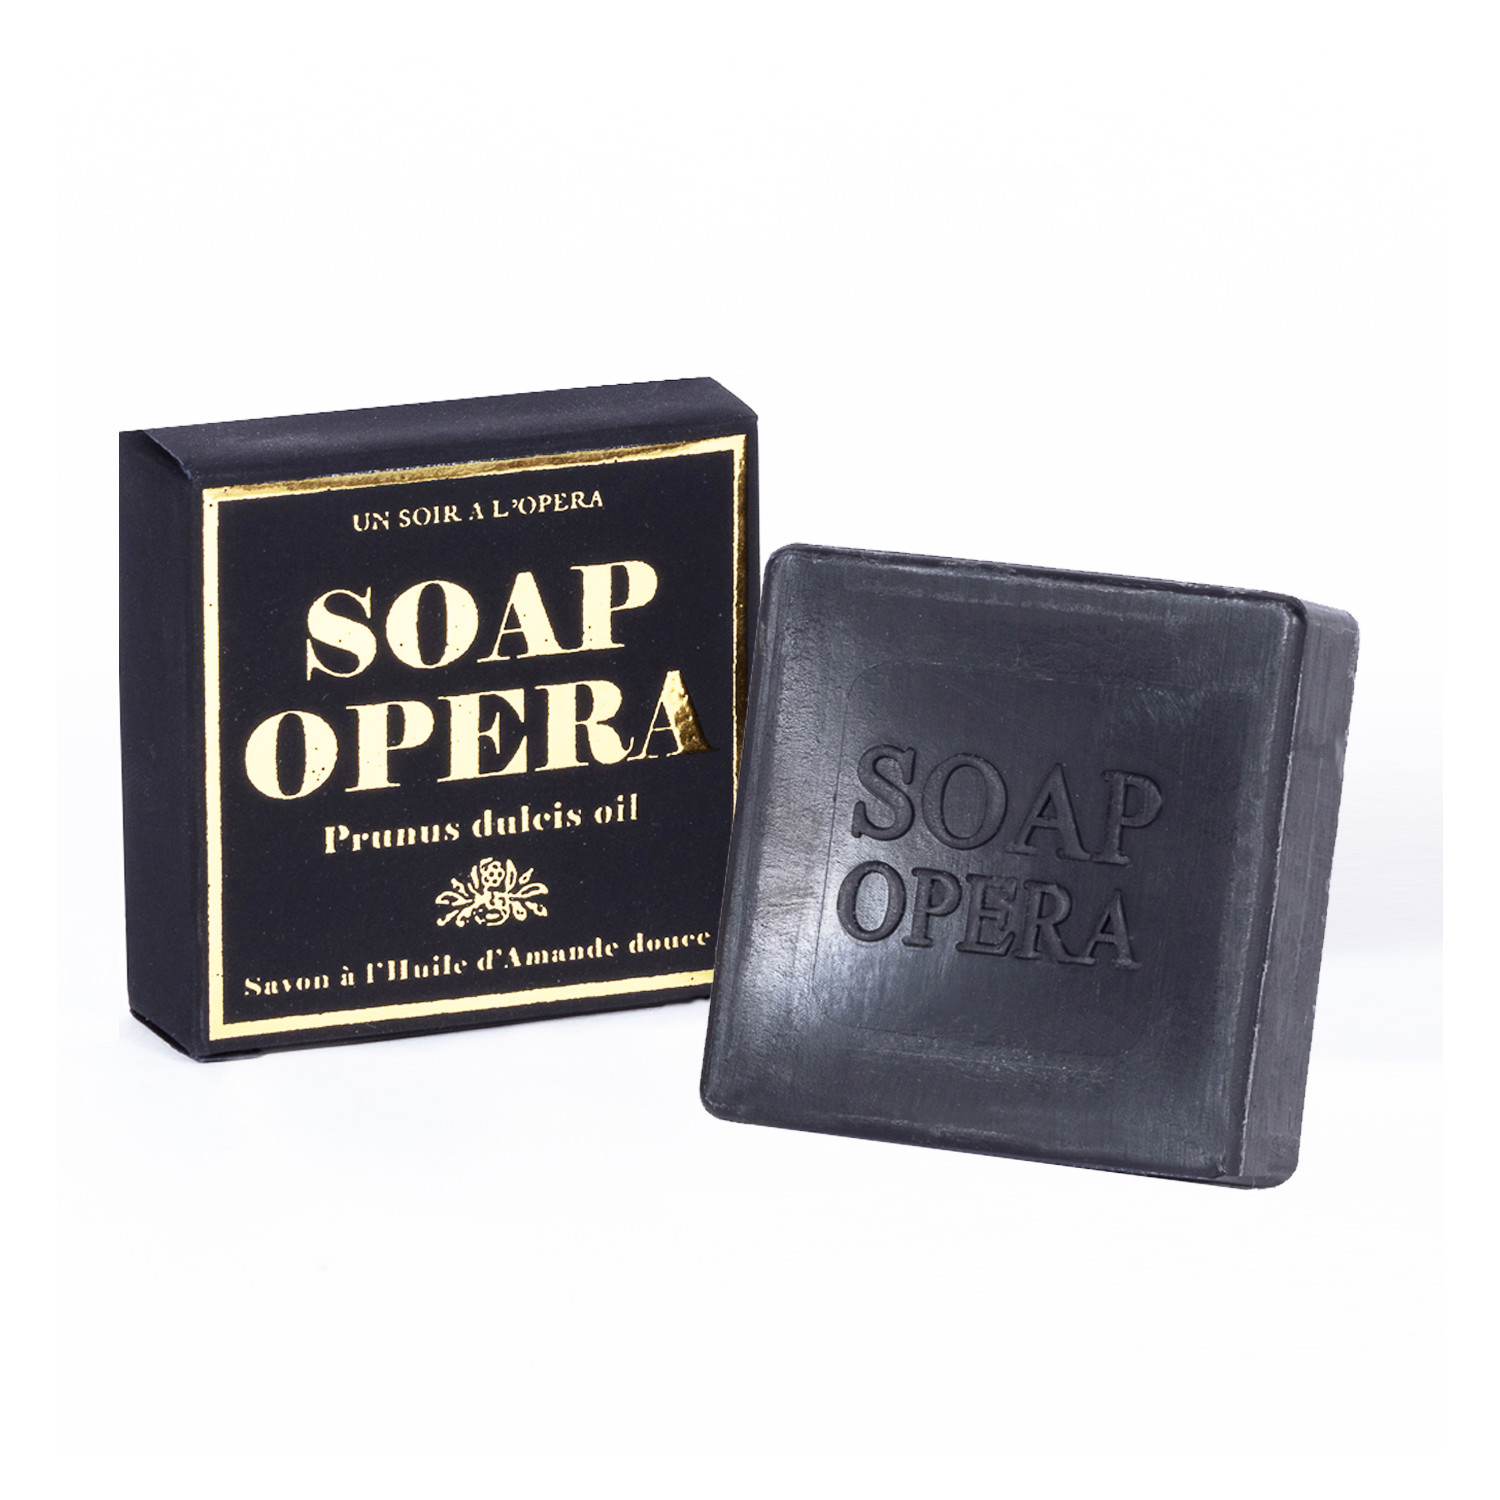 SOAP OPERA - Savon pour les mains - Huile d'amande douce et bois de Santal